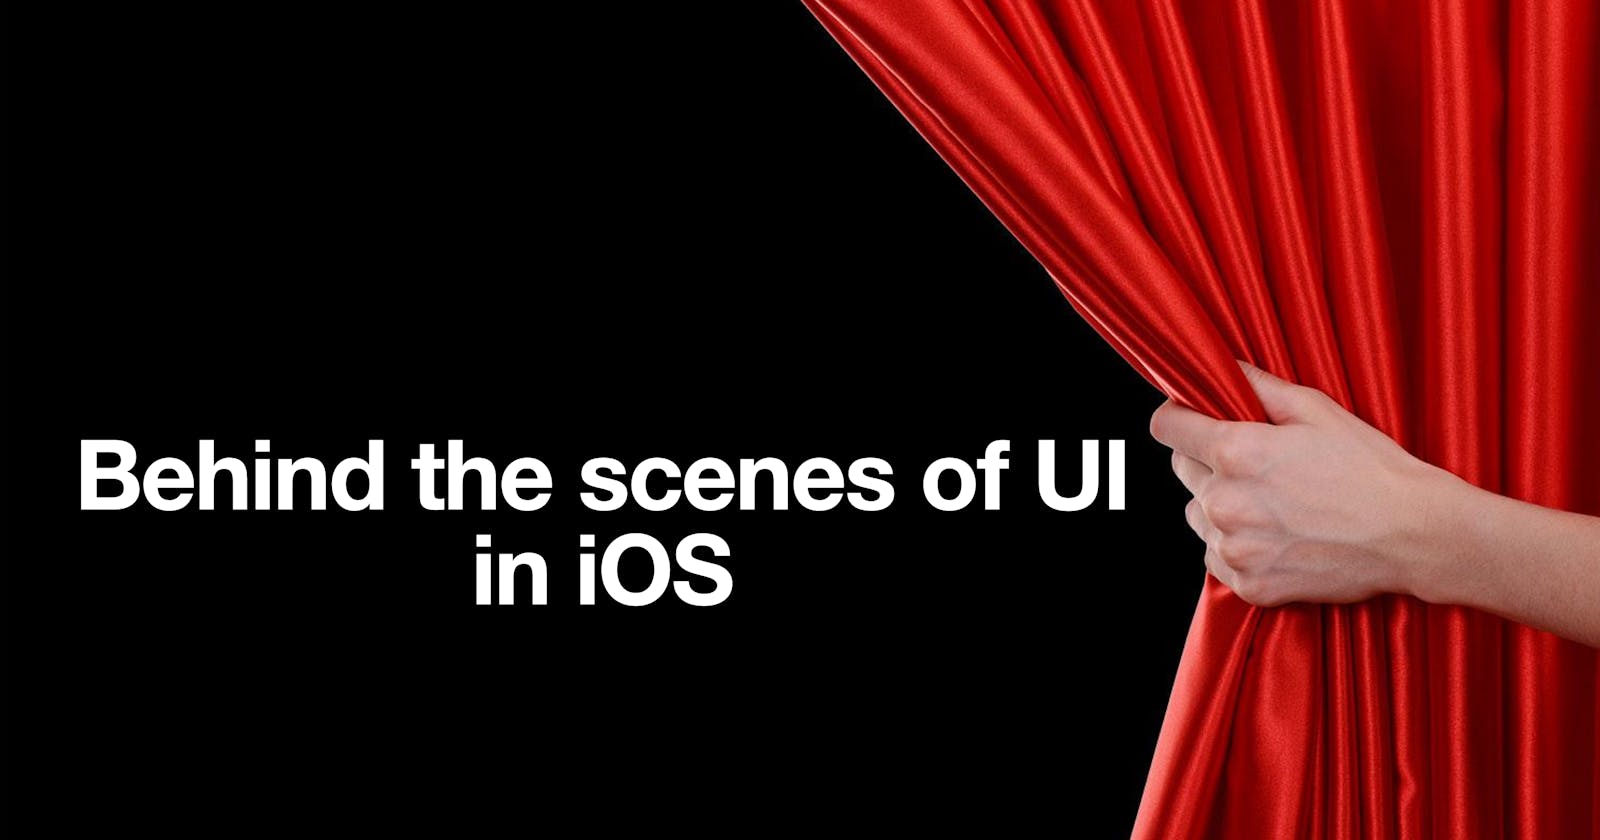 Behind the scenes of UI: Part 1 - UIKit